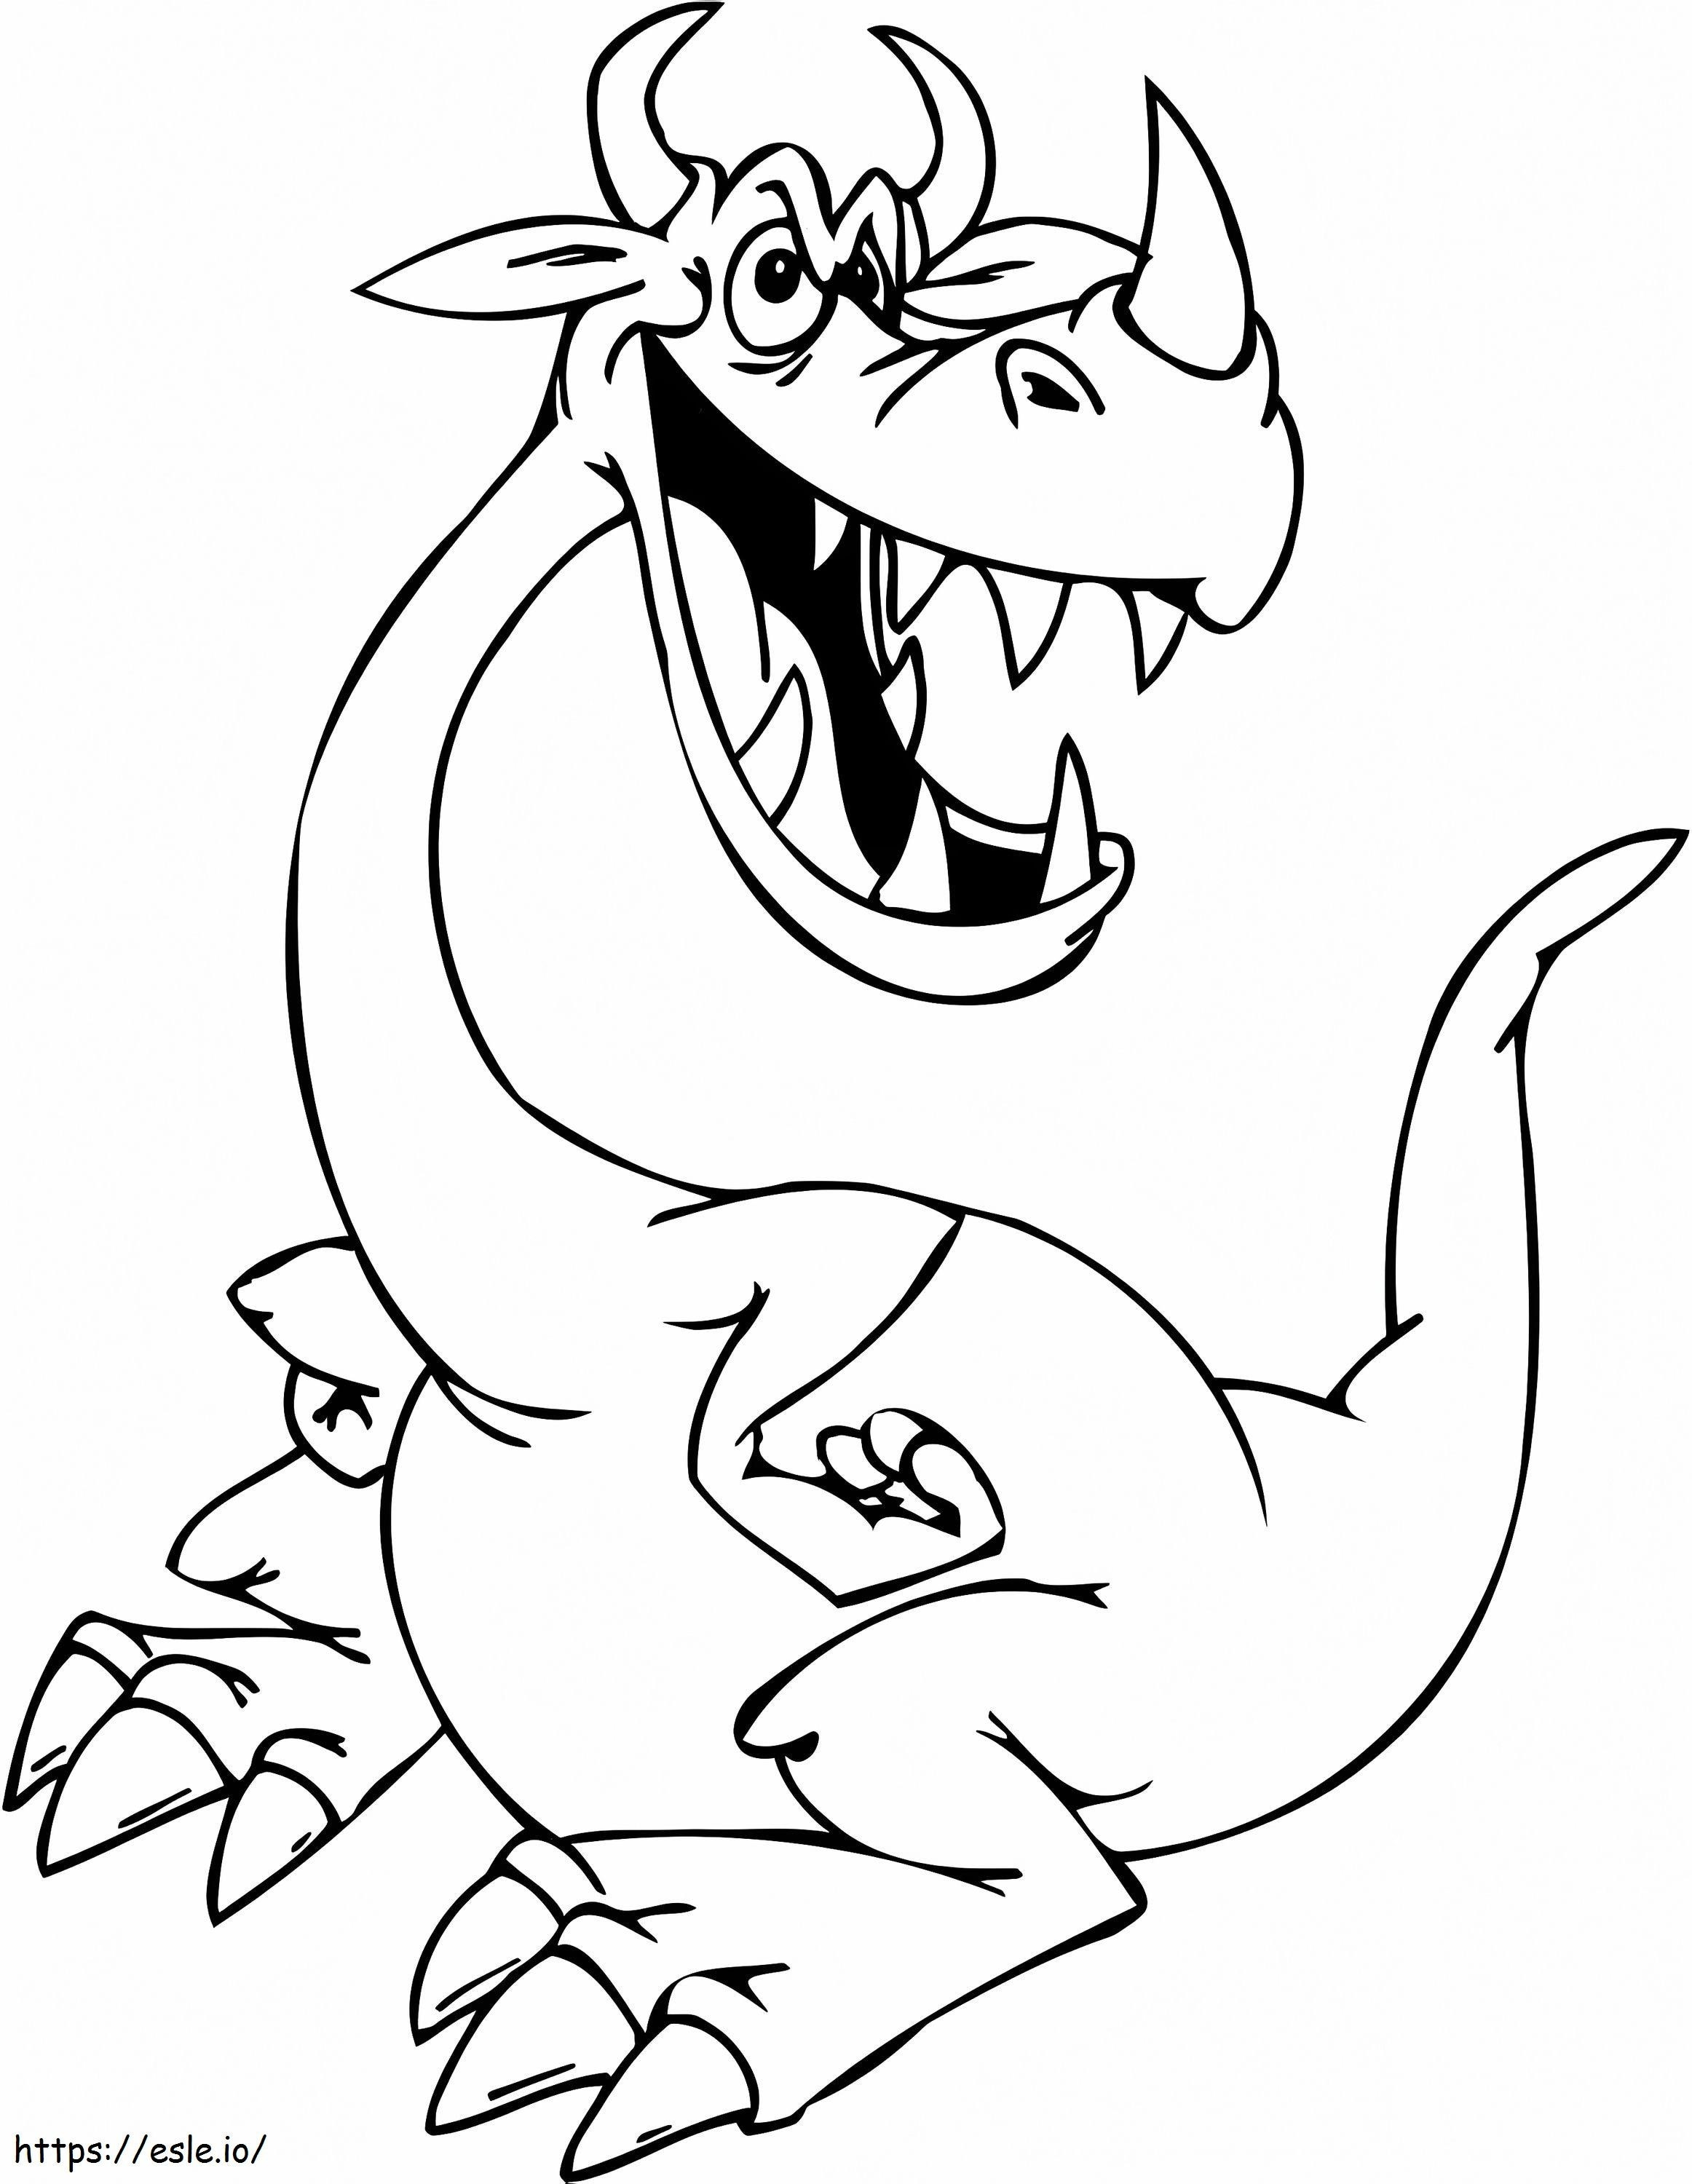 Despicable Dragon coloring page